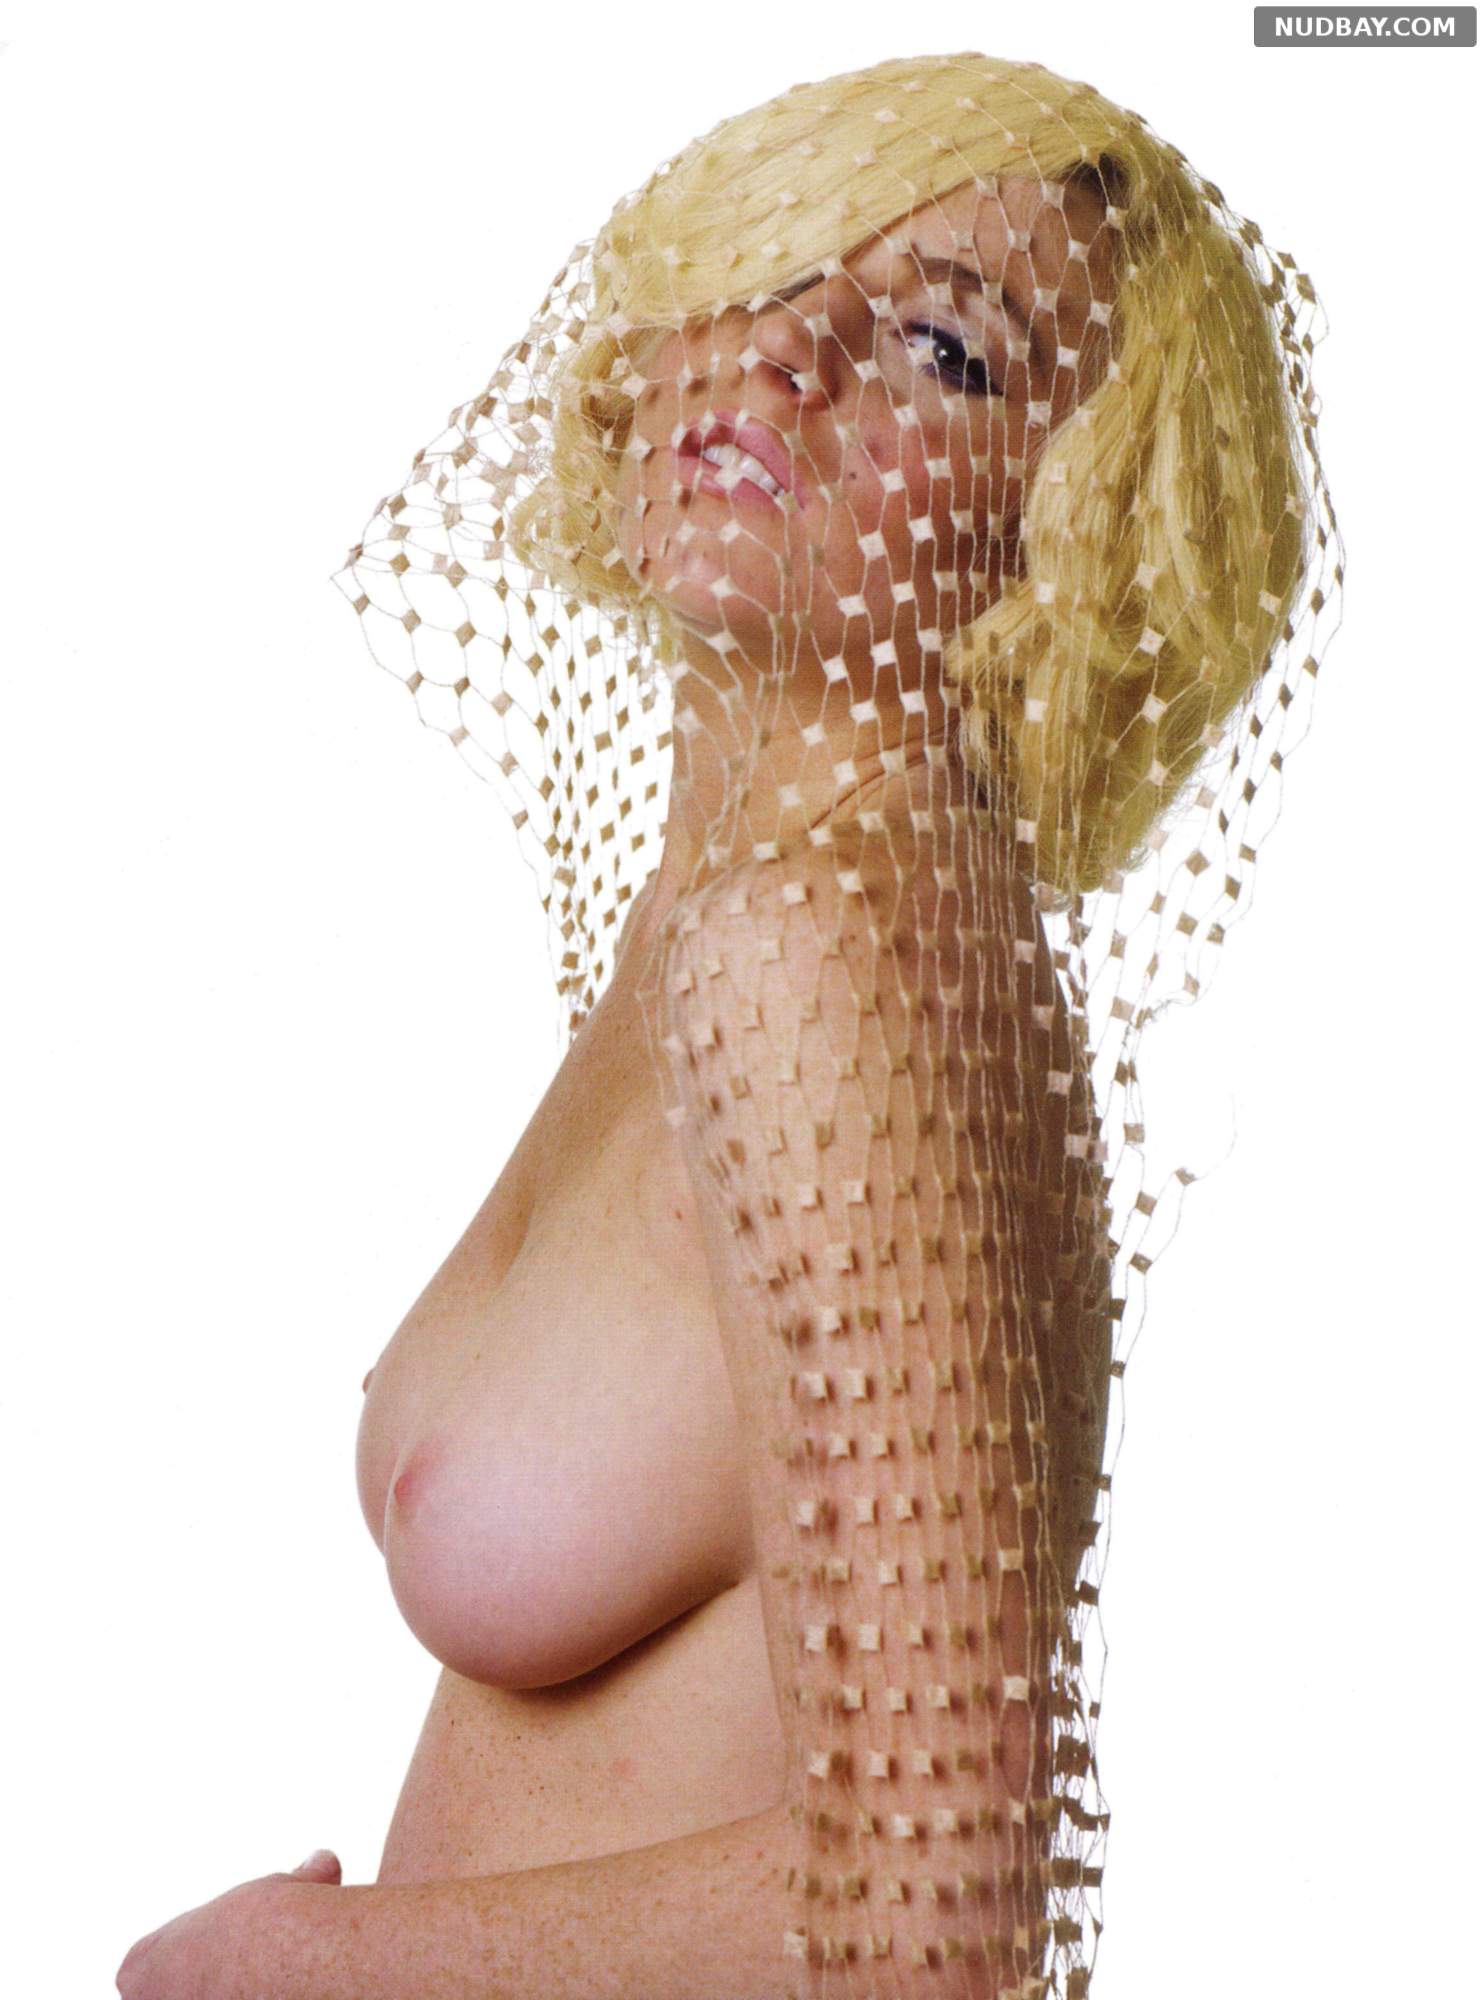 Lindsey lohan nude photos